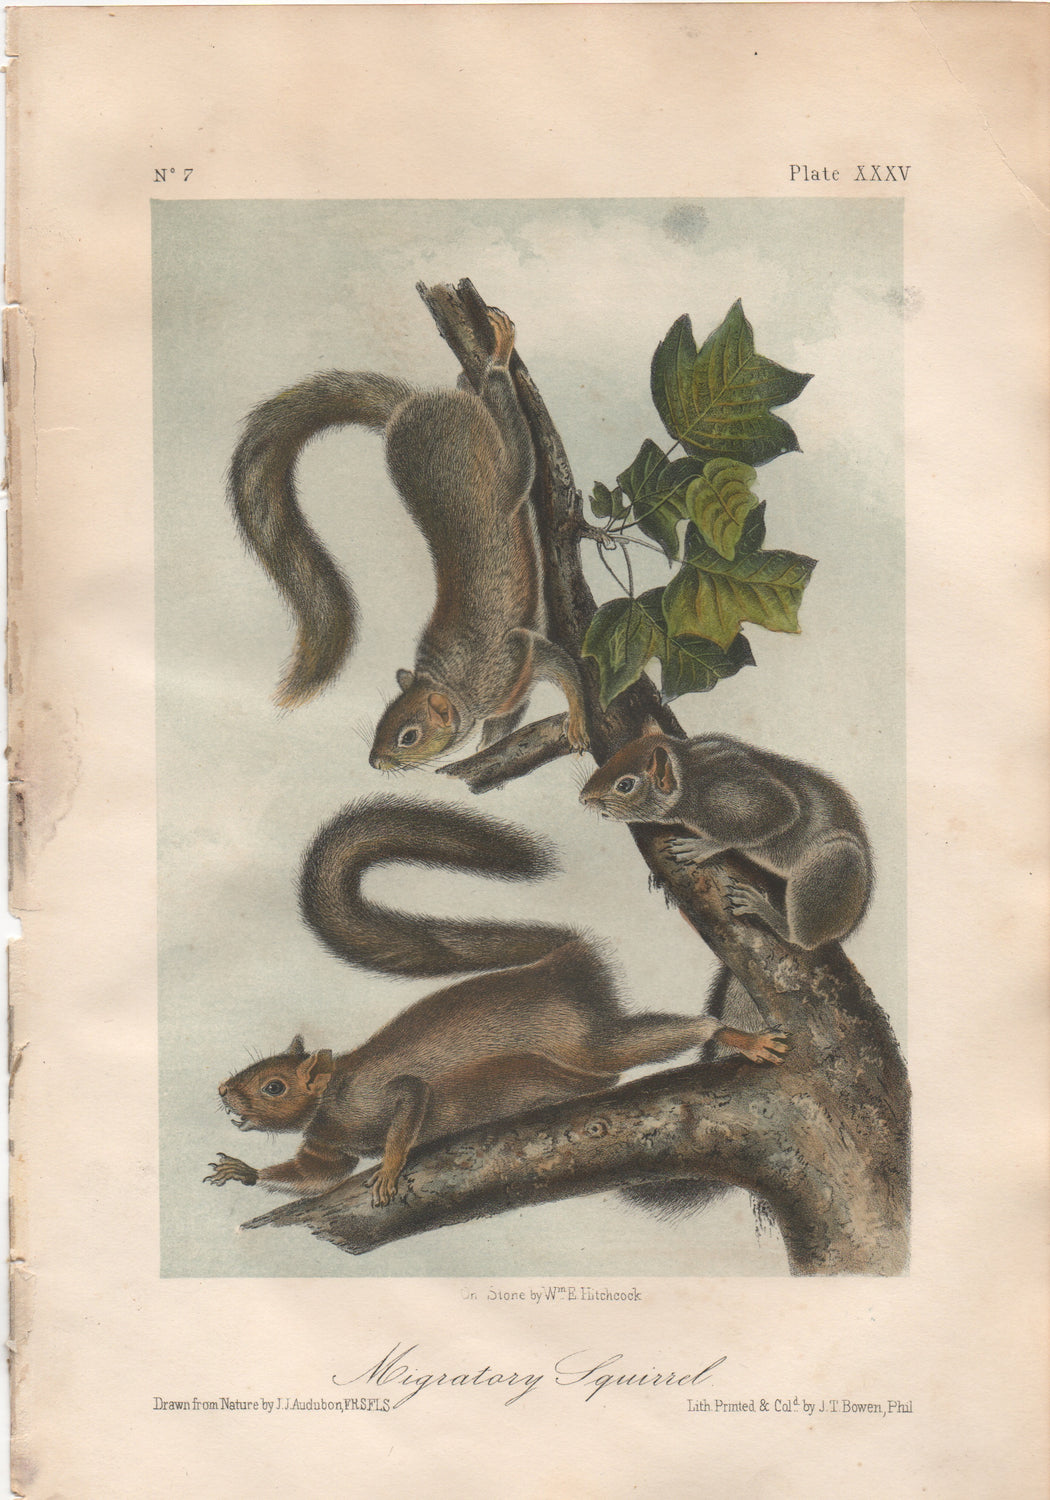 Audubon Original Octavo Mammal, Migratory Squirrel, plate 35